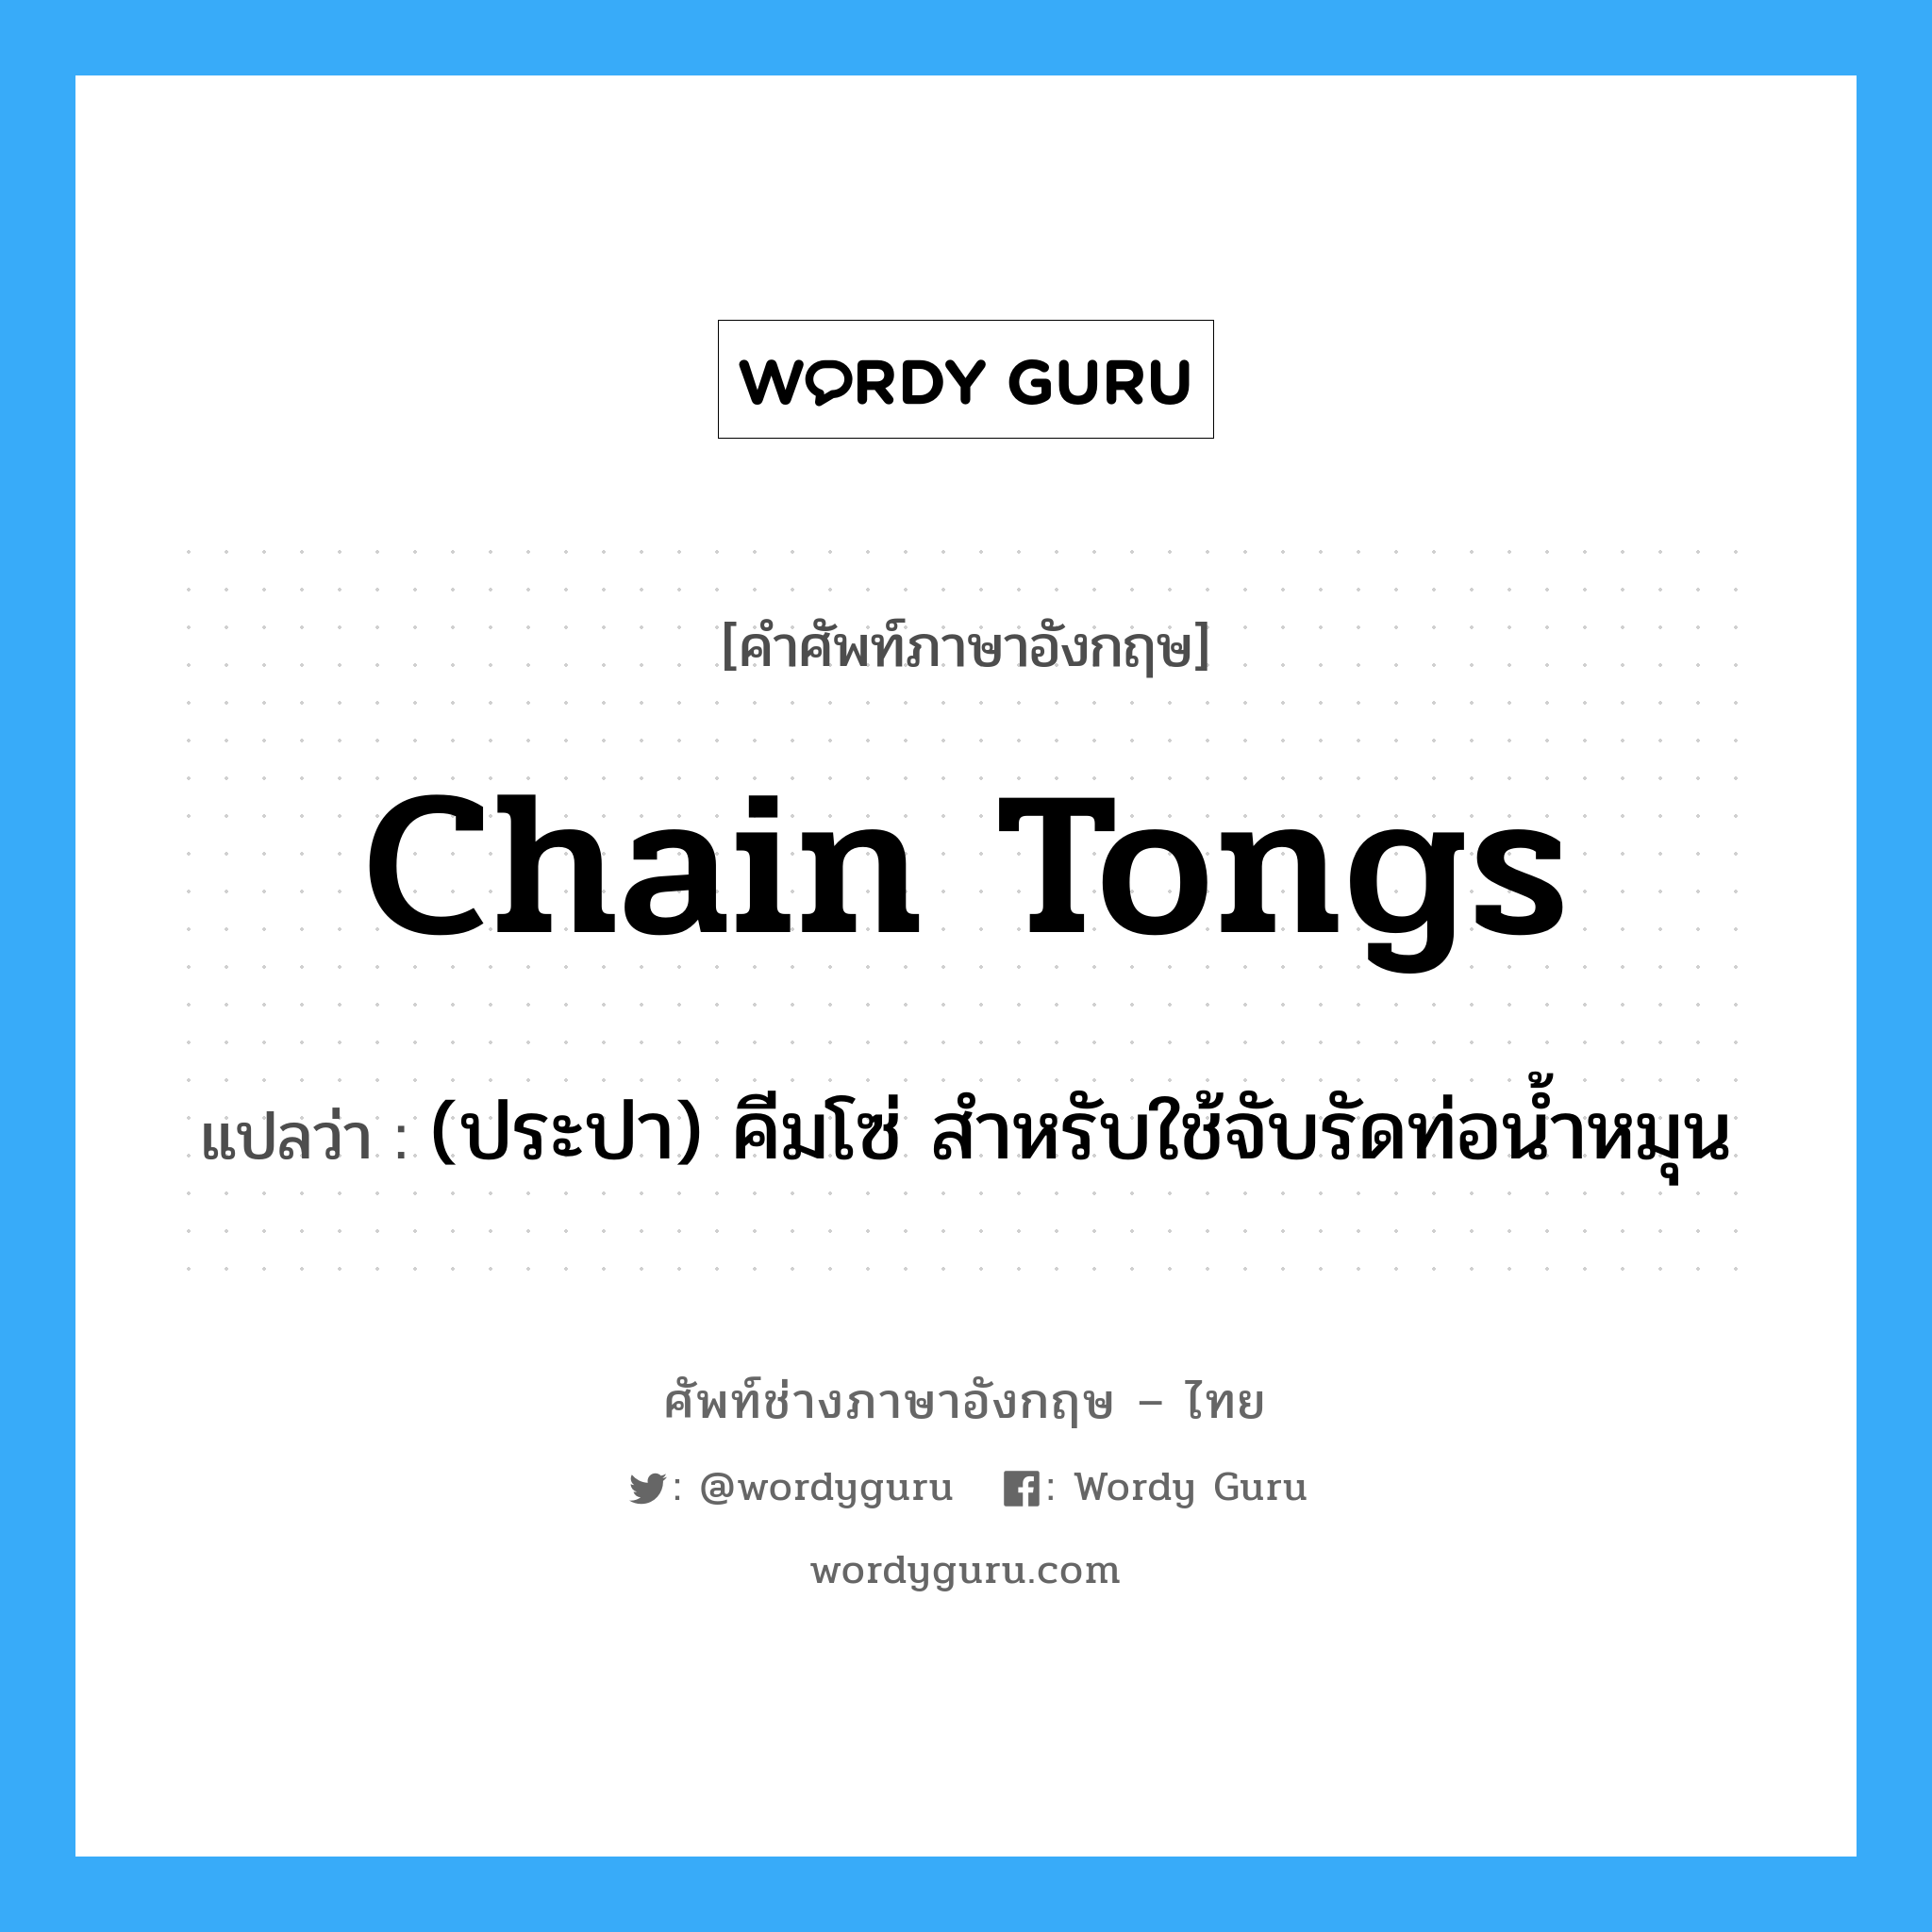 chain tongs แปลว่า?, คำศัพท์ช่างภาษาอังกฤษ - ไทย chain tongs คำศัพท์ภาษาอังกฤษ chain tongs แปลว่า (ประปา) คีมโซ่ สำหรับใช้จับรัดท่อน้ำหมุน